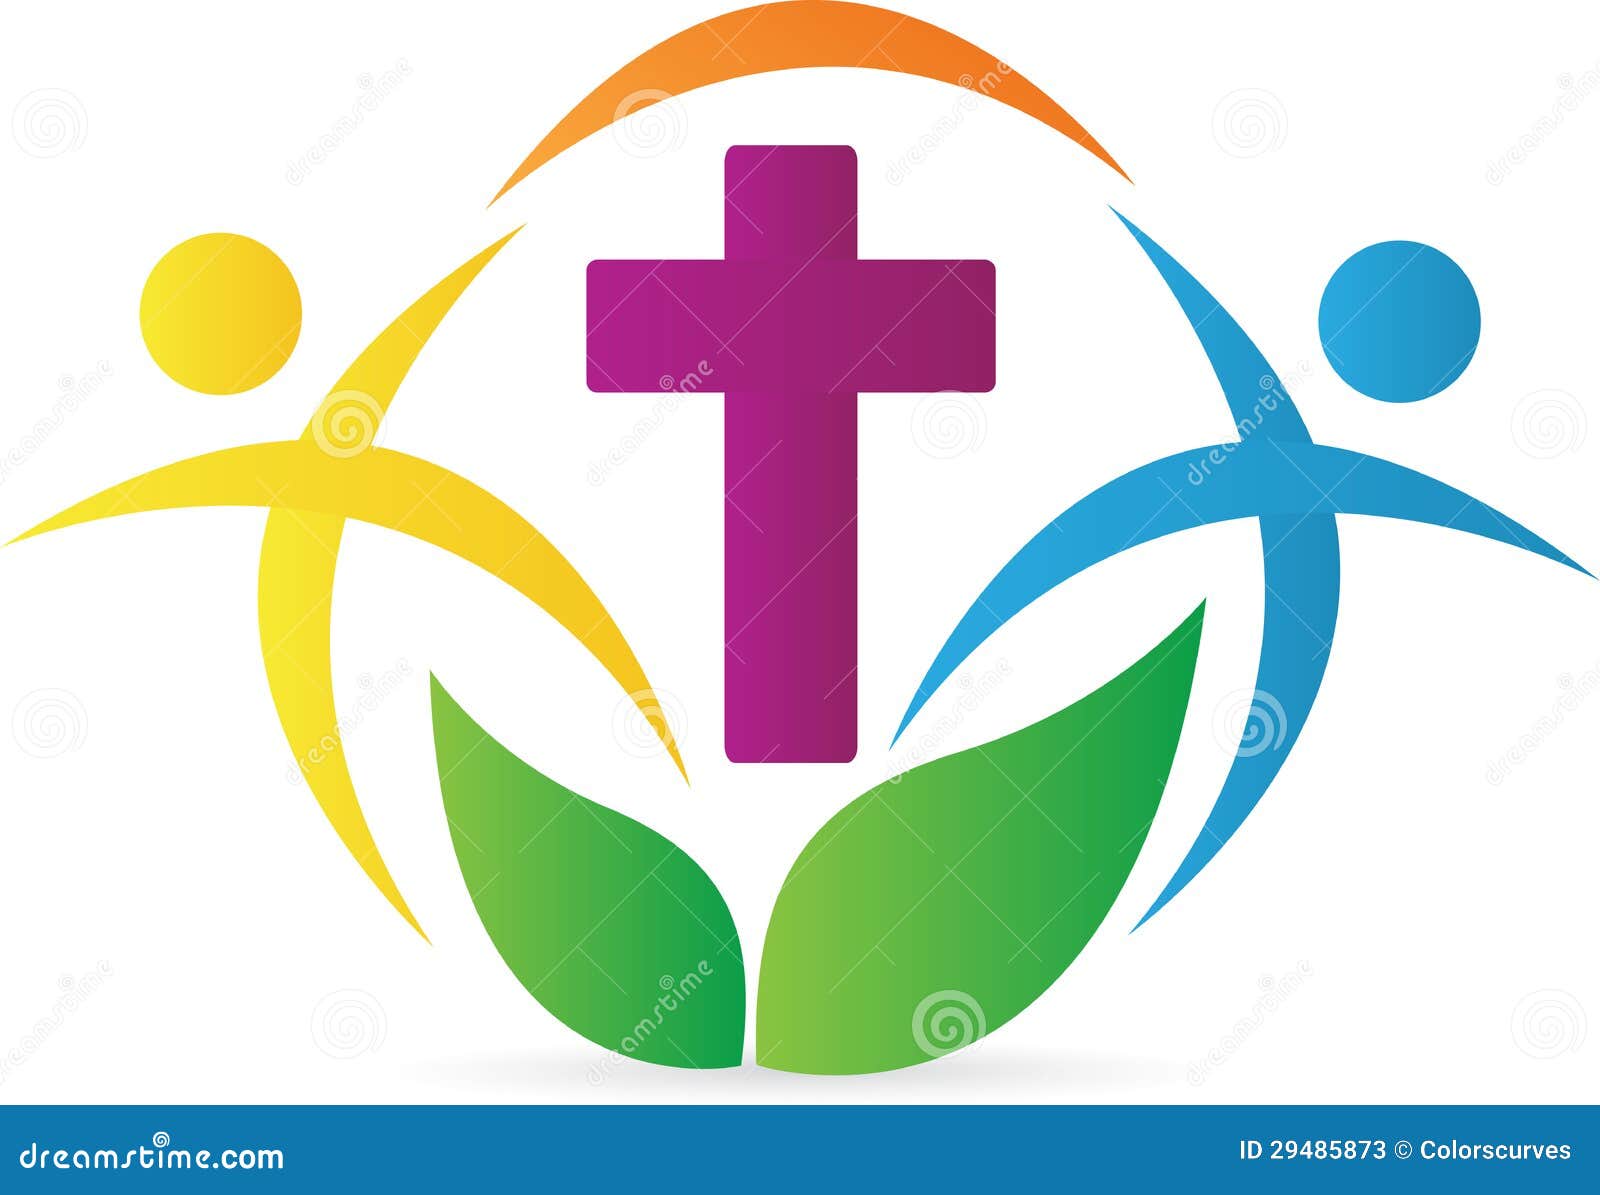 free church logo clip art - photo #39